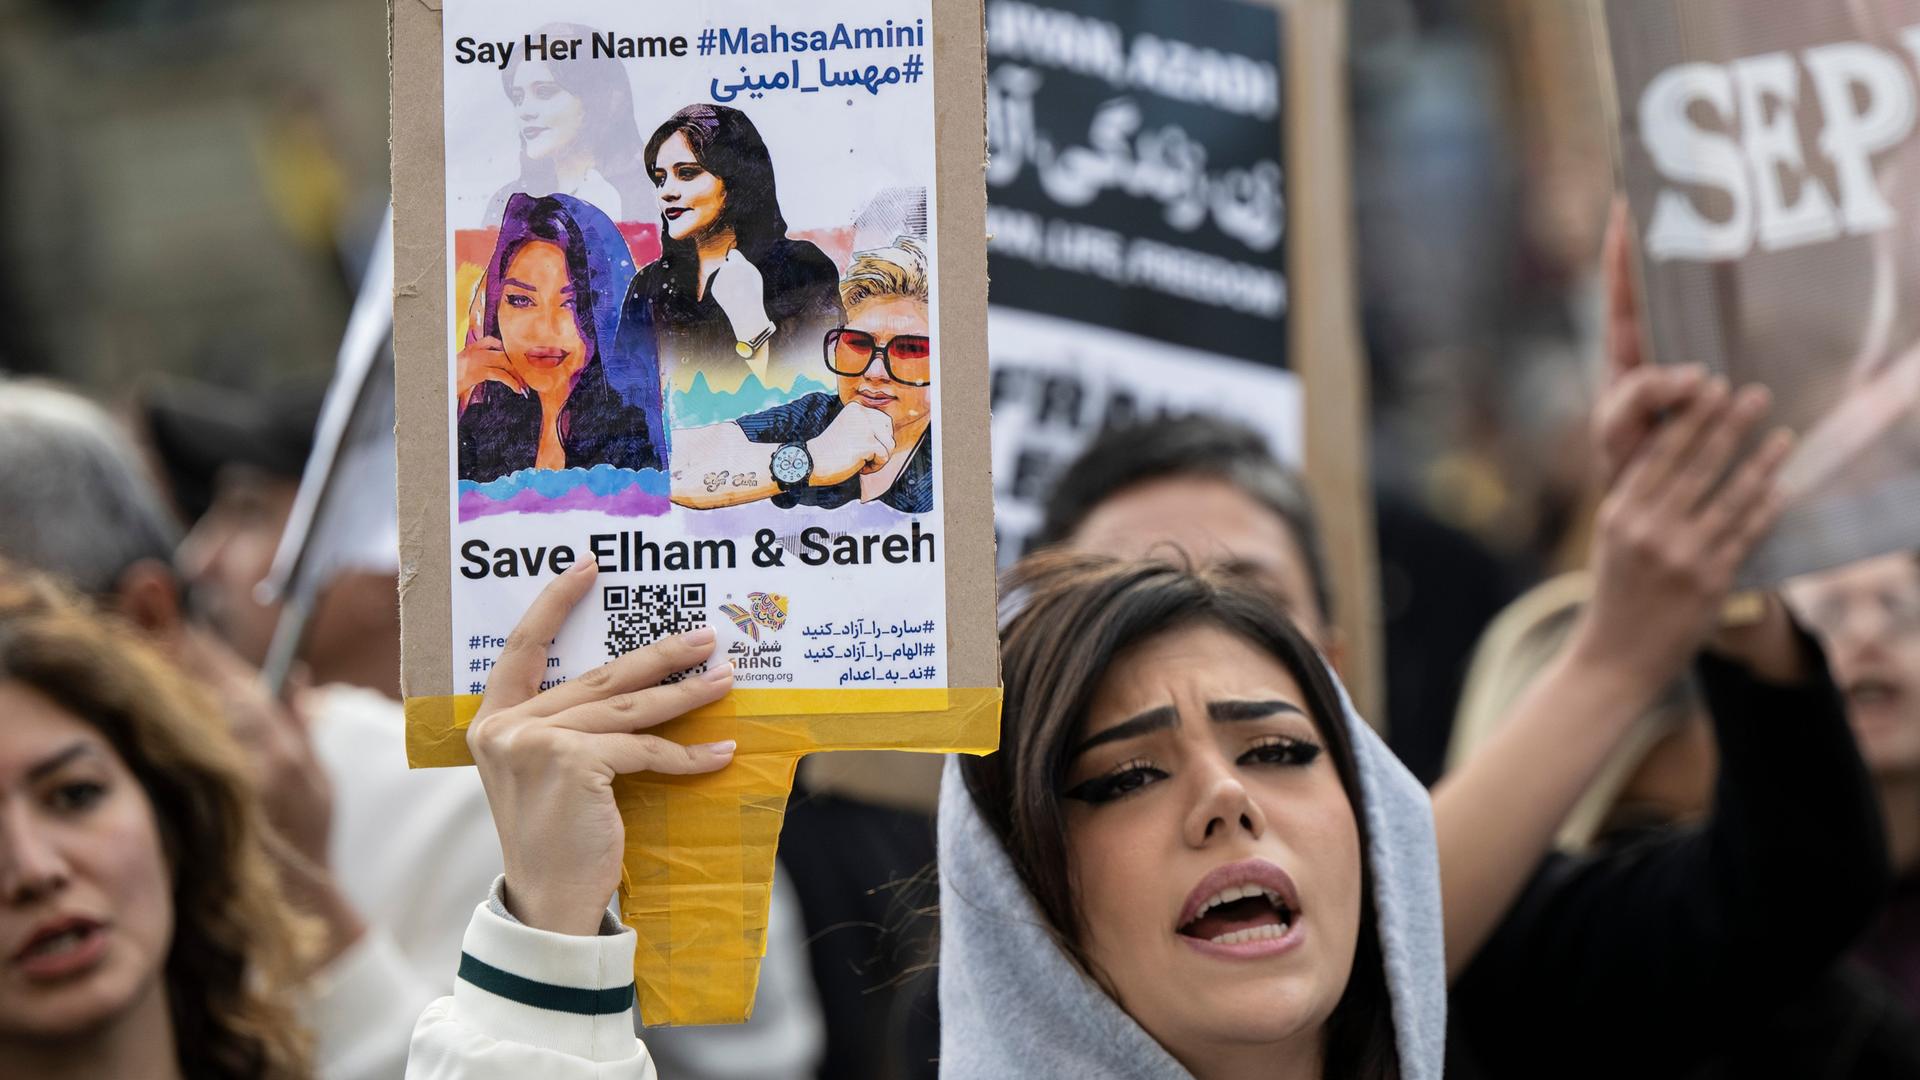 Demonstranten während einer Kundgebung gegen das politische Regime im Iran. Auf einem Schild steht "Say her name #Mahsa Amini". Nach dem Tod der 22-jährigen in Teheran kommt es weltweit zu Protesten und Solidaritätskundgebungen.